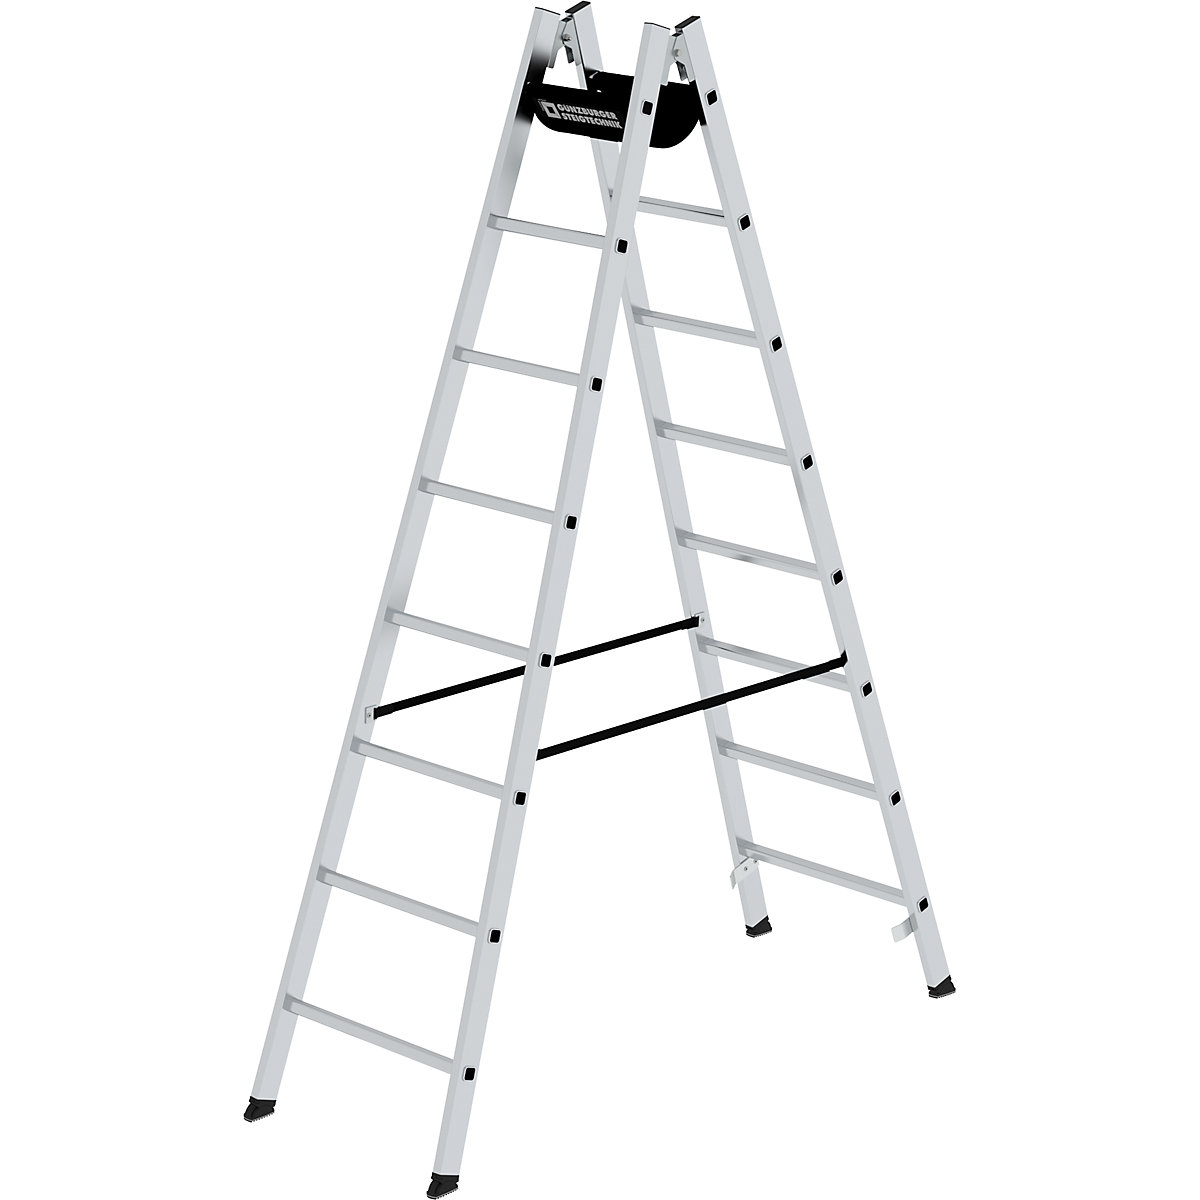 Bezpečnostný rebrík s priečkami, pochôdzny z oboch strán – MUNK, priečky 30 x 30 mm, nešmykľavé, 2 x 8 priečok-10